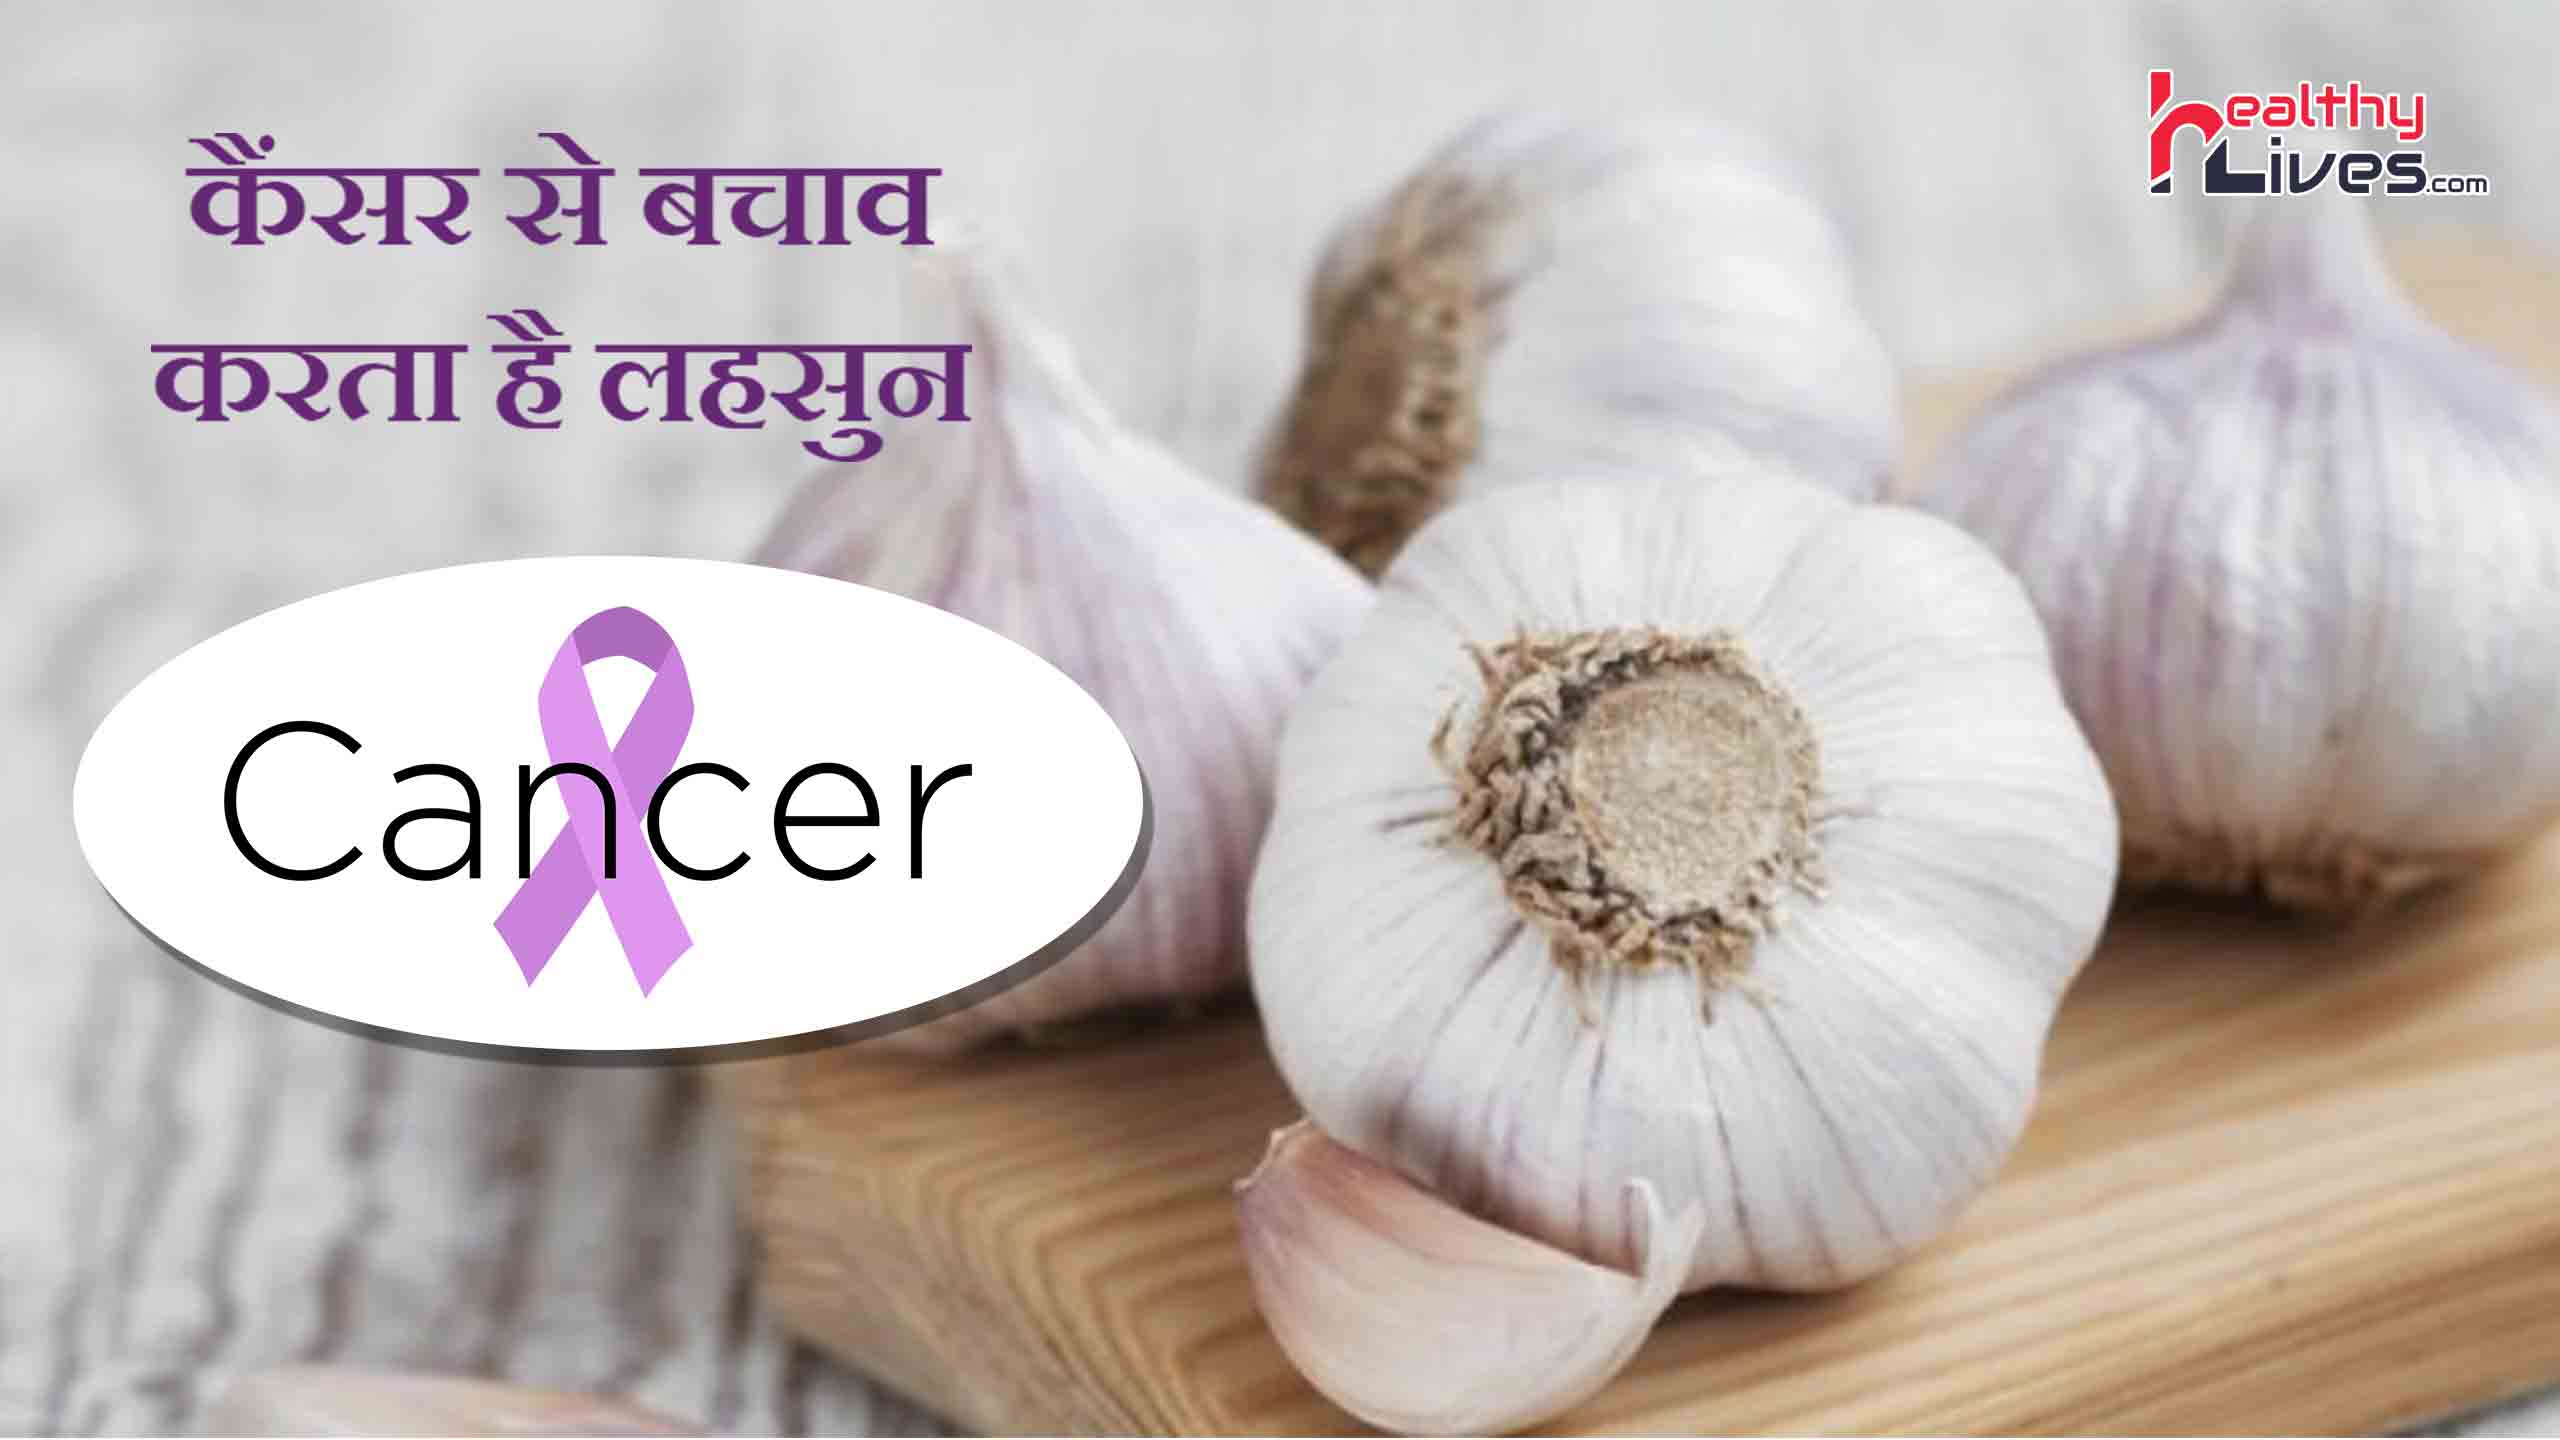 Garlic Benefits for Cancer: कैंसर जैसे रोगों से लड़ने में सक्षम है लहसुन